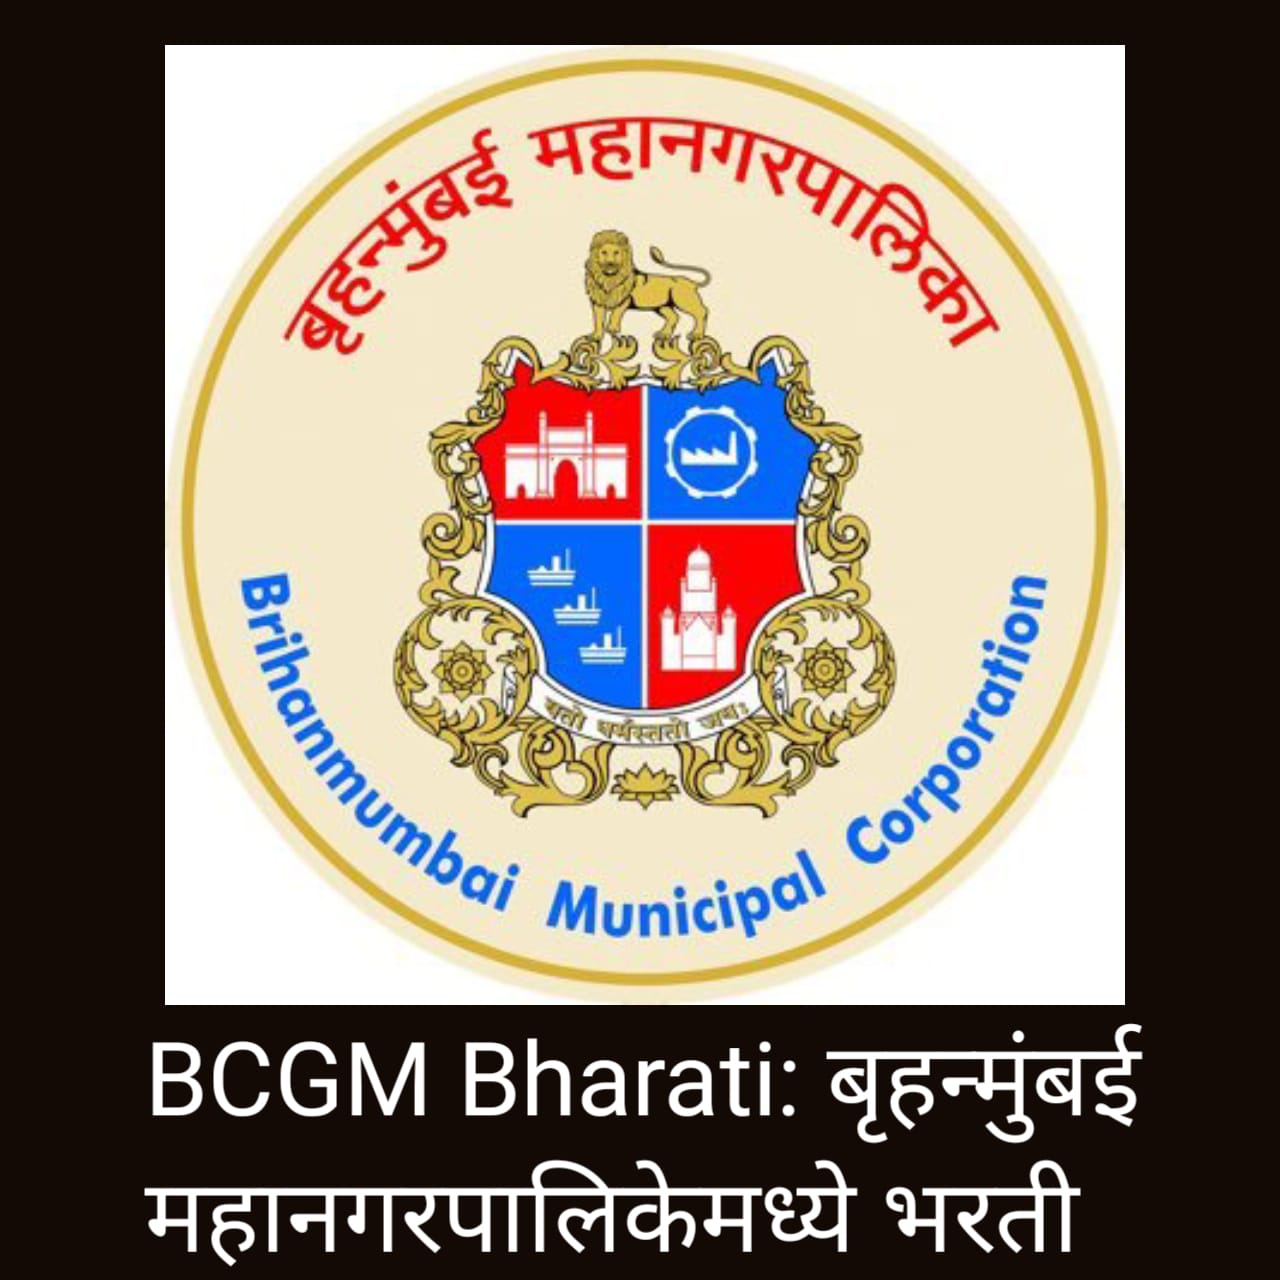 Bruhanmumbai Mahanagarpalika Recruitment